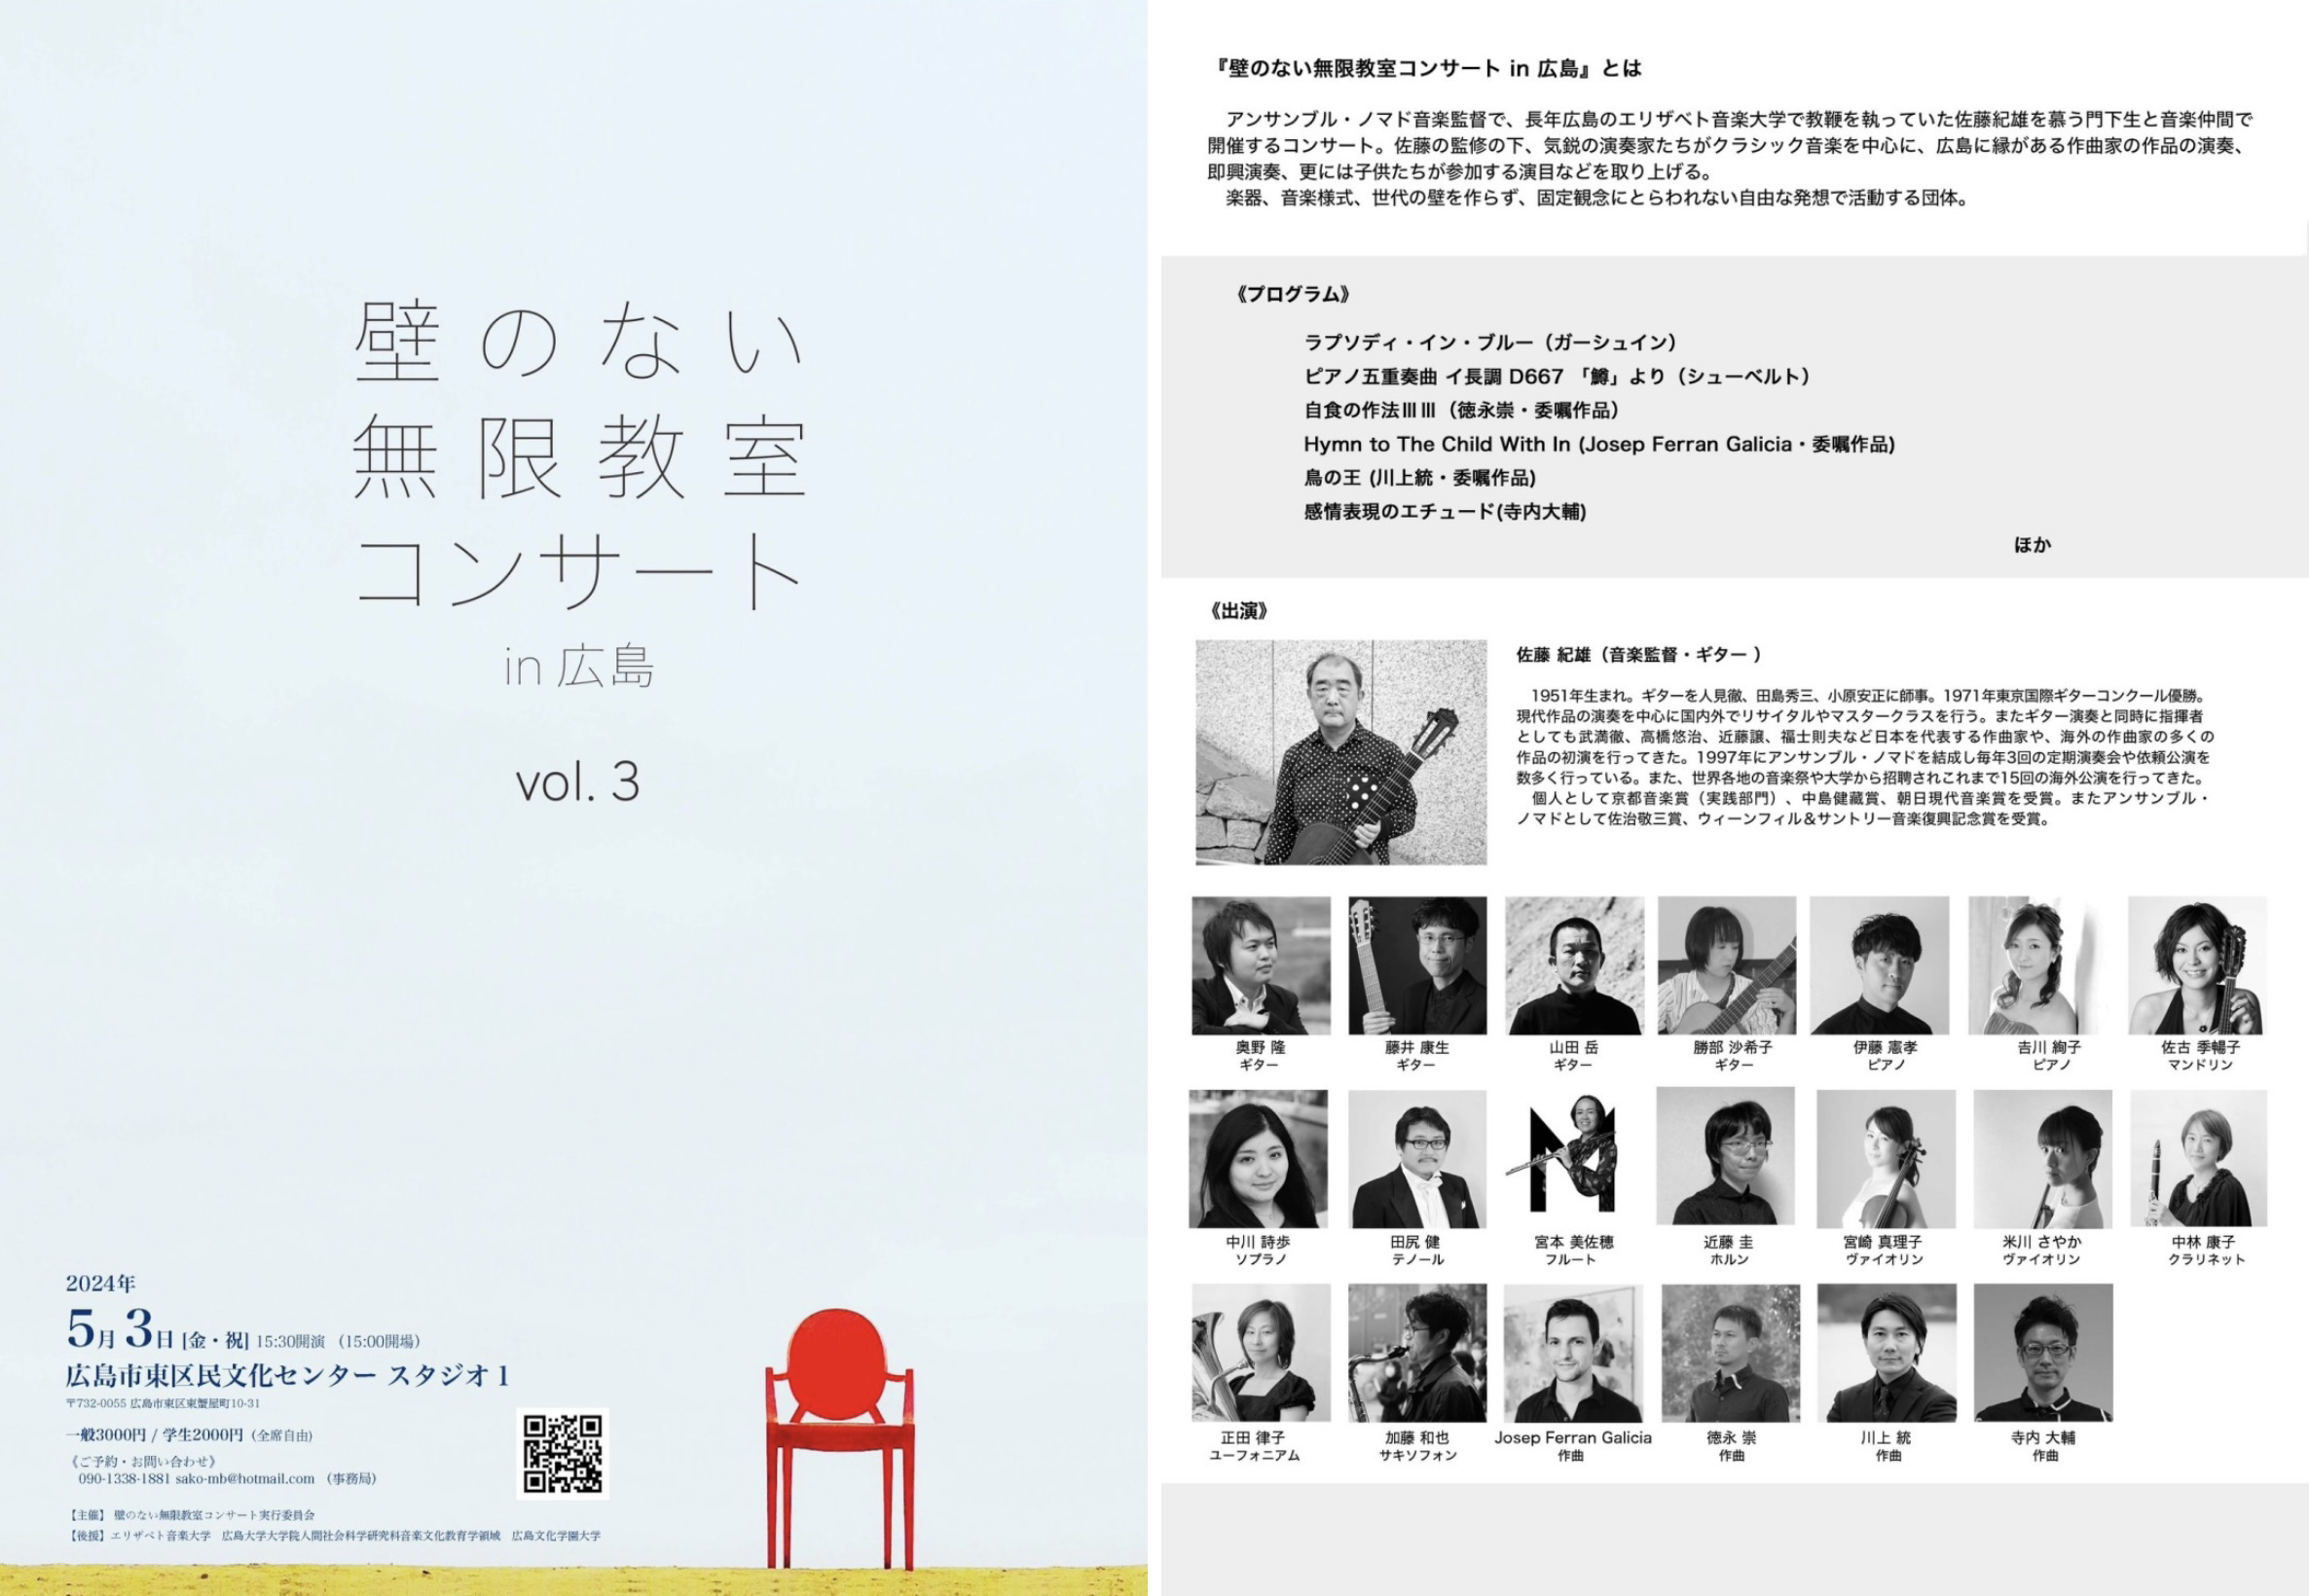 壁のない無限教室コンサート in 広島vol.3